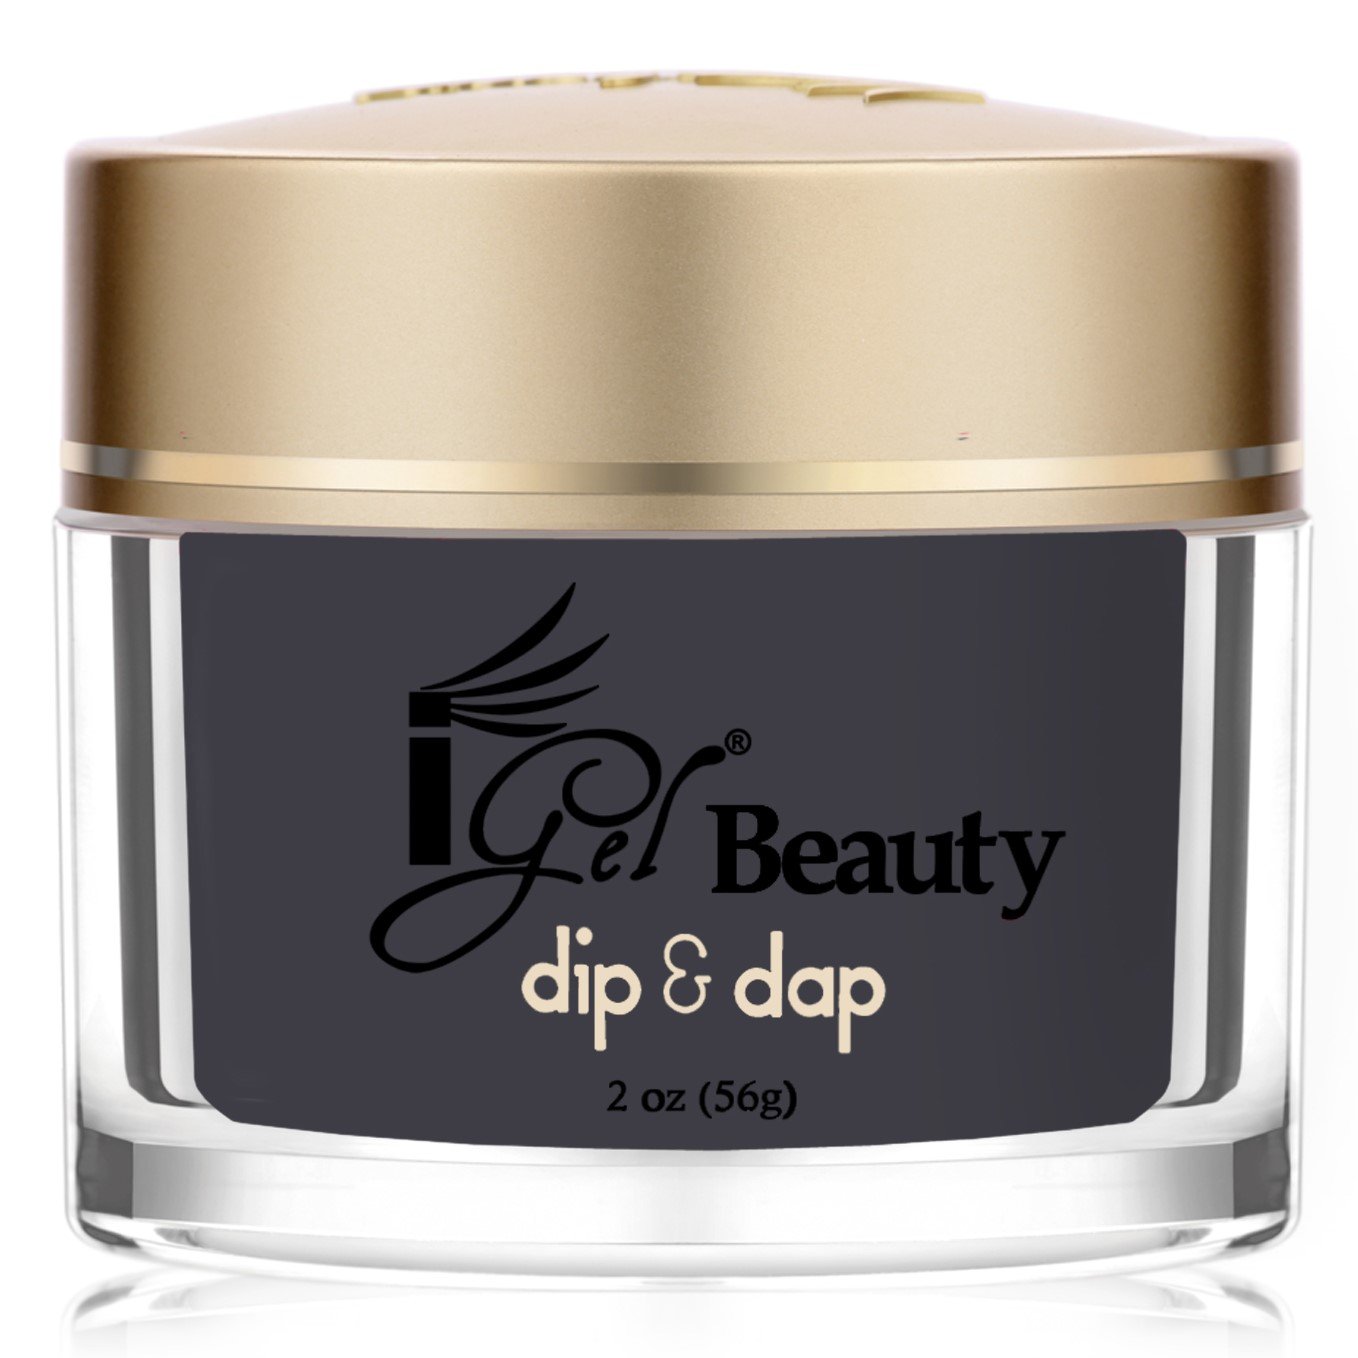 iGel Beauty - Dip & Dap Powder - DD075 Granite Peak - RECOMMENDED FOR DIP